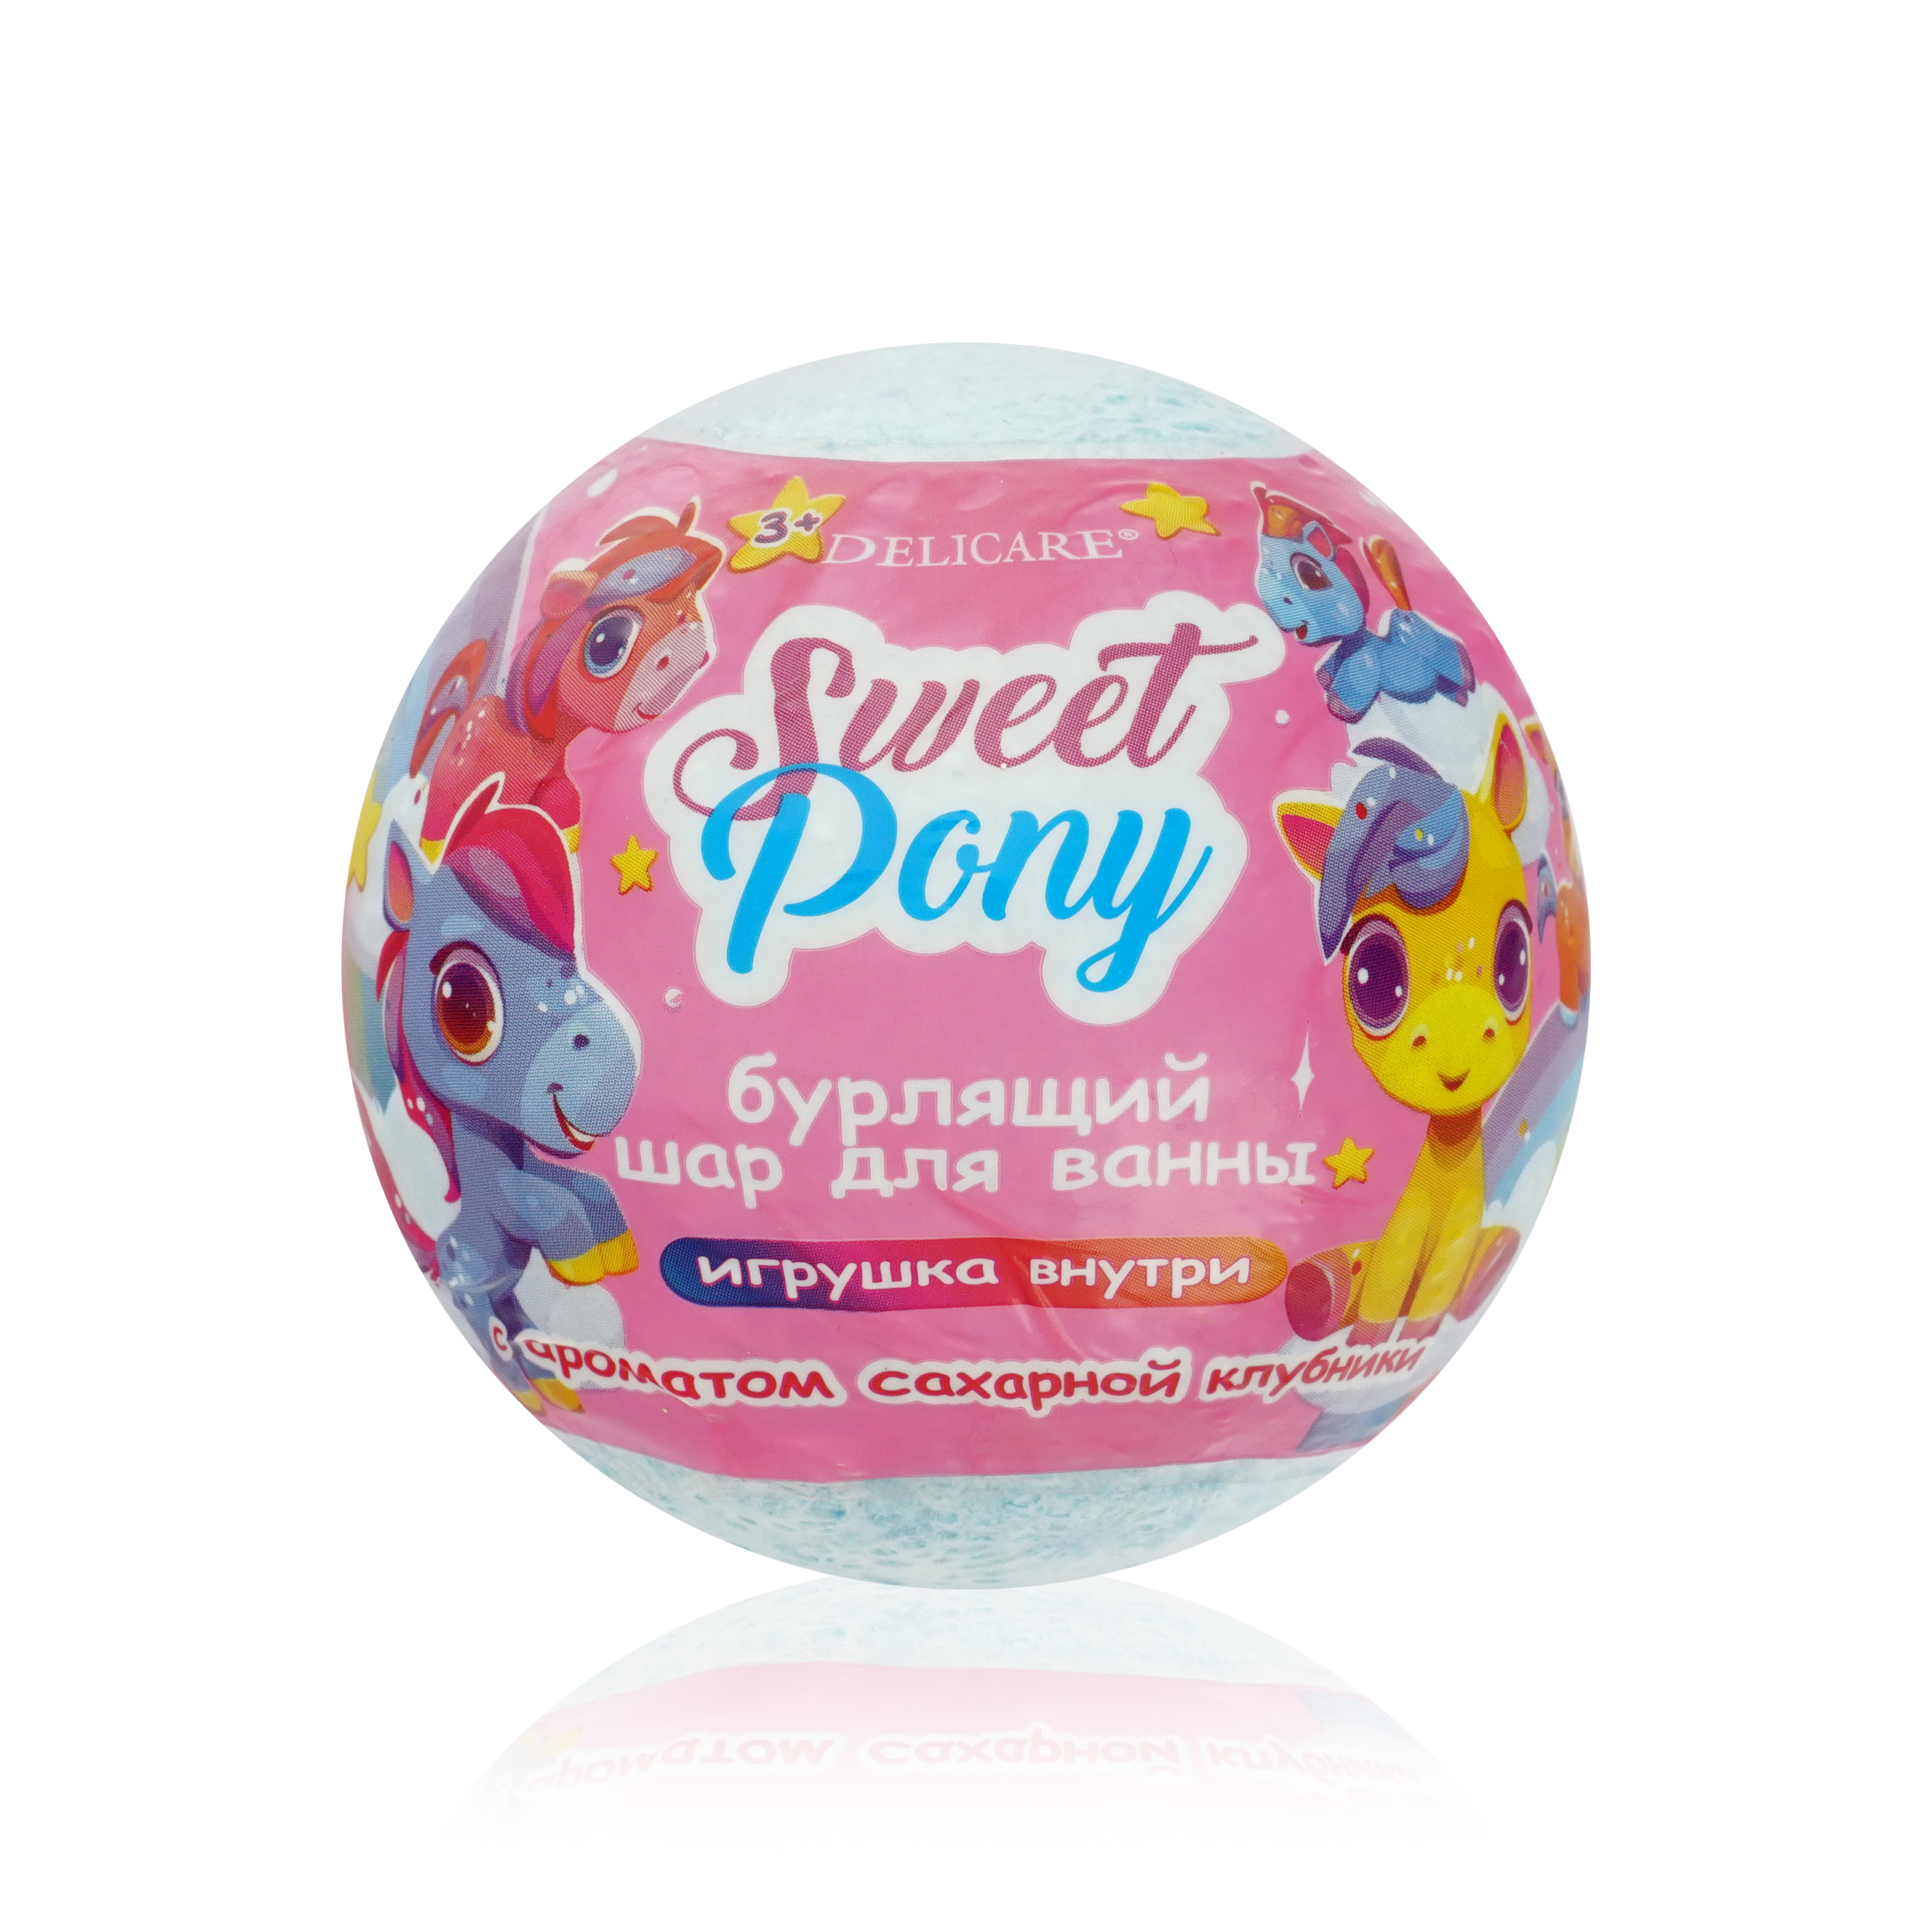 Бурлящий шар для ванны с игрушкой внутри Delicare Sweet Pony 130 г шар бурлящий для ванны l cosmetics вишня 160 г